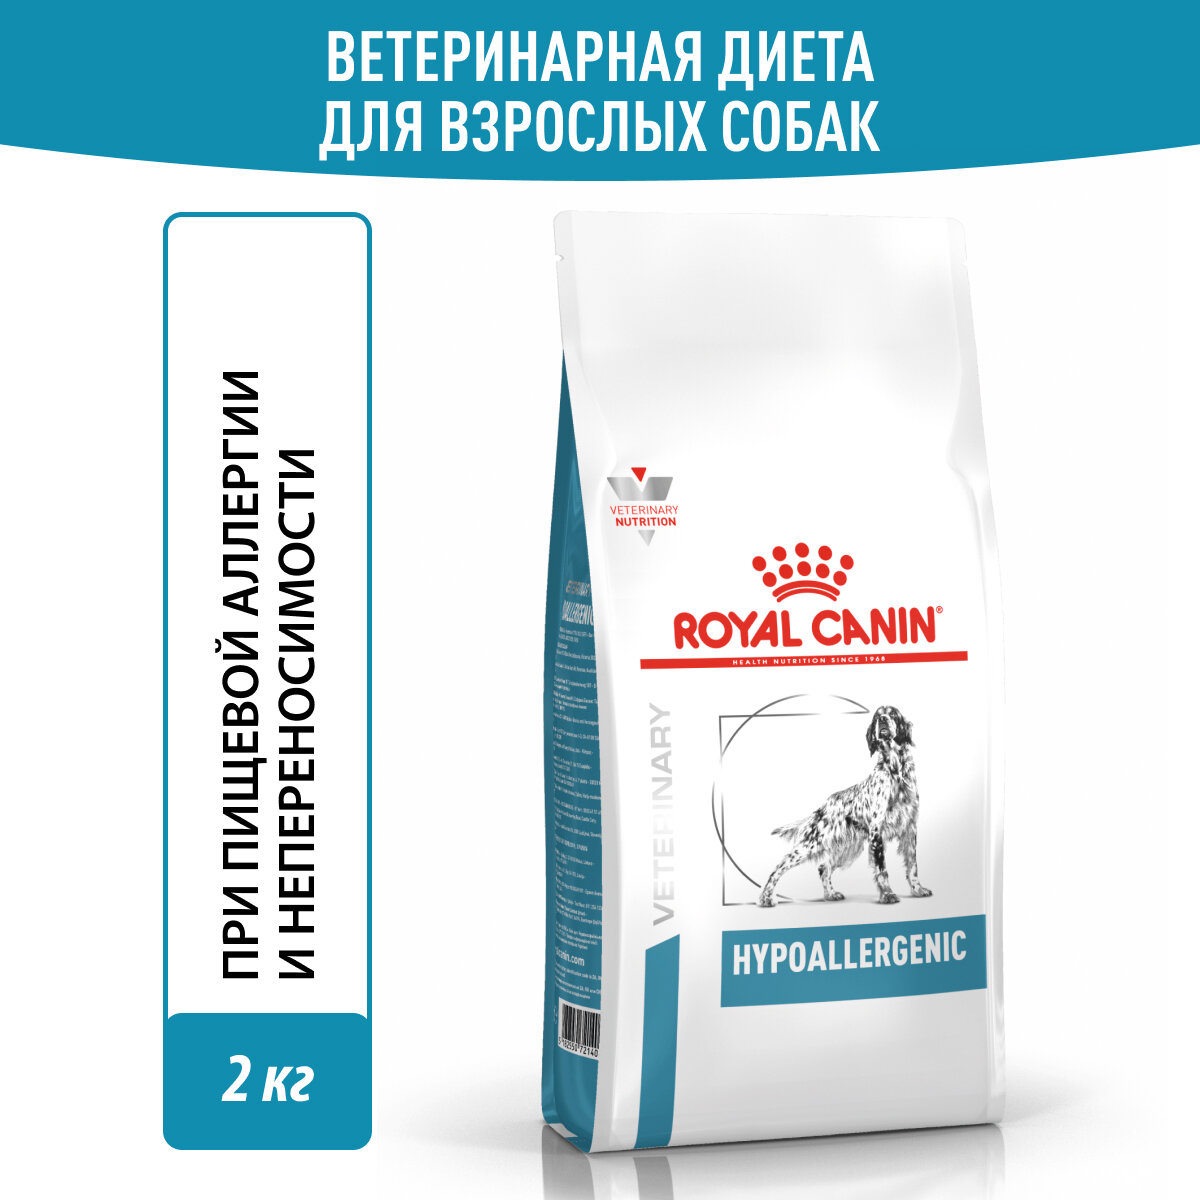 ROYAL CANIN HYPOALLERGENIC для взрослых собак при пищевой аллергии (2 кг)